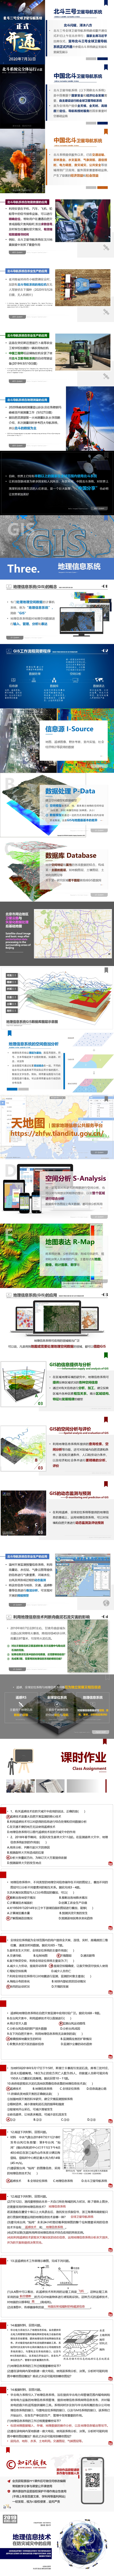 [2019版 新课标] 1.6.4 地理信息技术在防灾减灾中的应用 800px-01.jpg